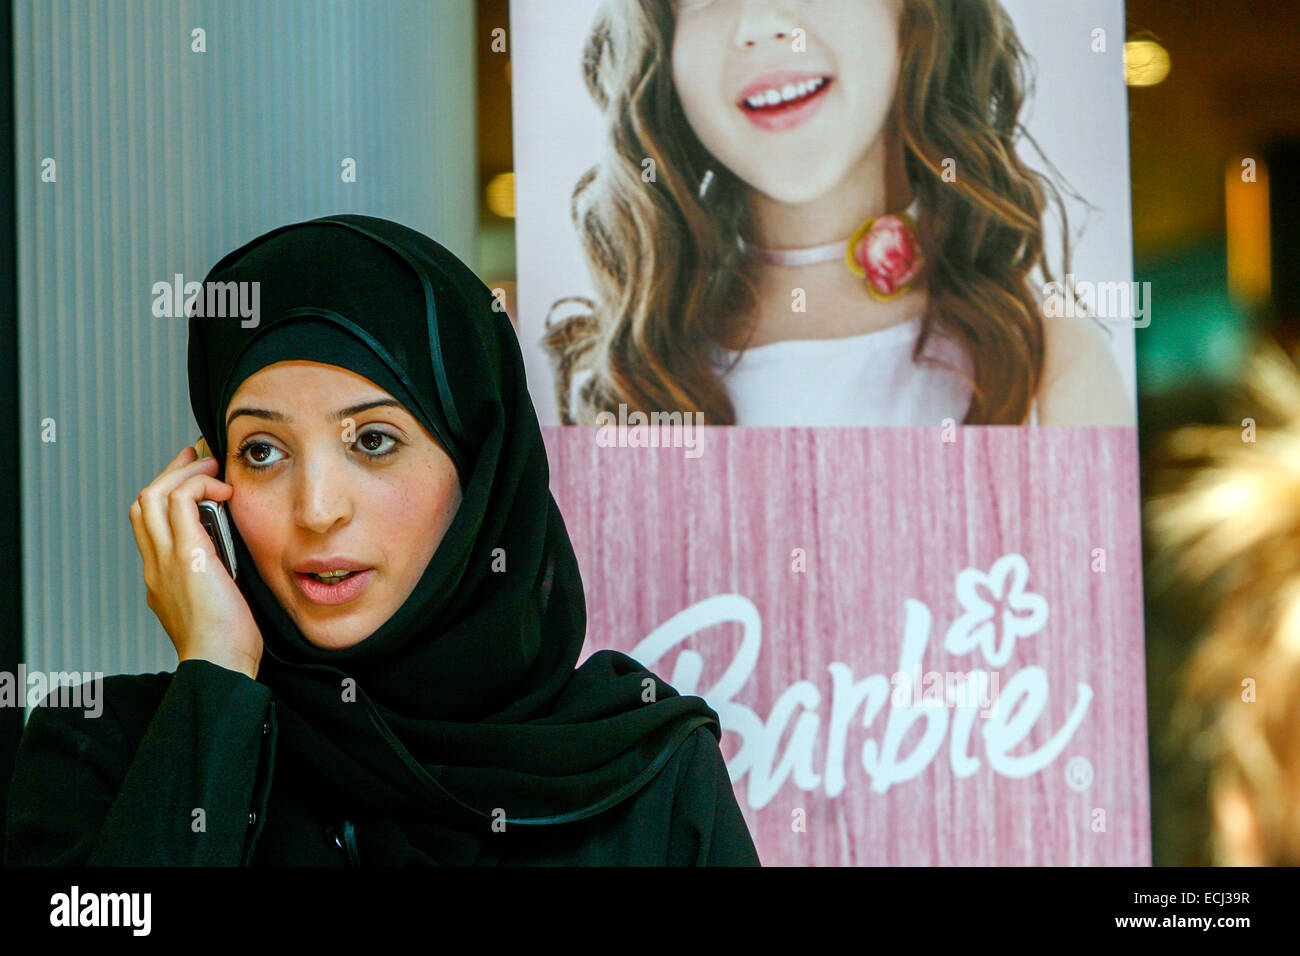 Hijab femme téléphone mobile Barbie, Prague République tchèque Banque D'Images